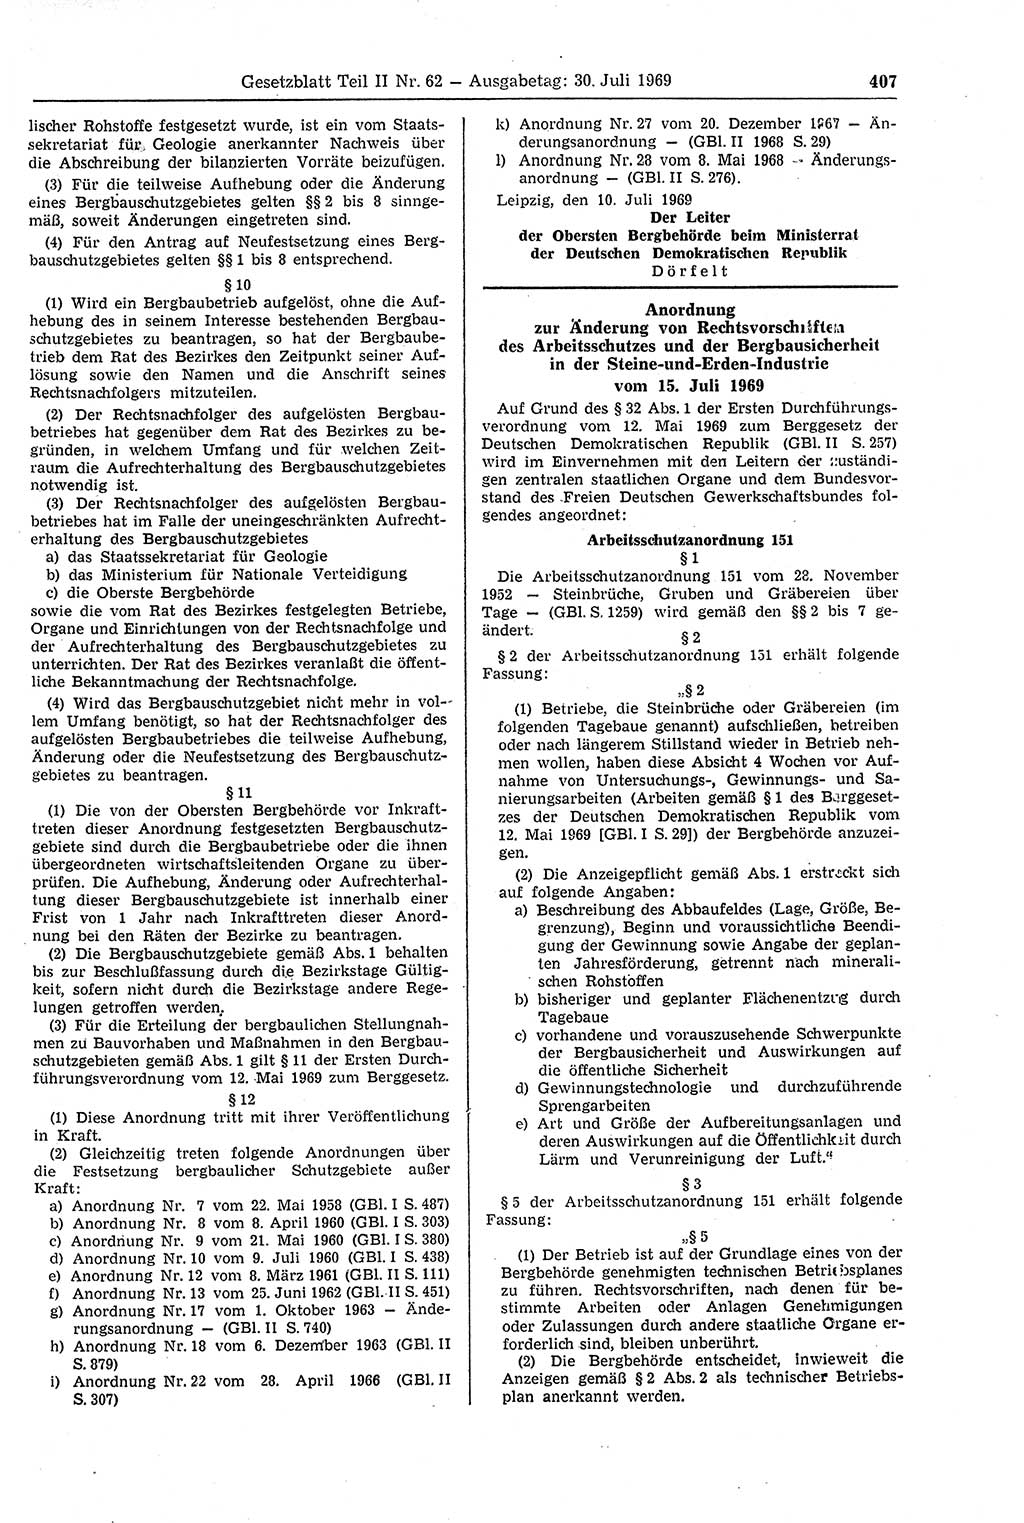 Gesetzblatt (GBl.) der Deutschen Demokratischen Republik (DDR) Teil ⅠⅠ 1969, Seite 407 (GBl. DDR ⅠⅠ 1969, S. 407)